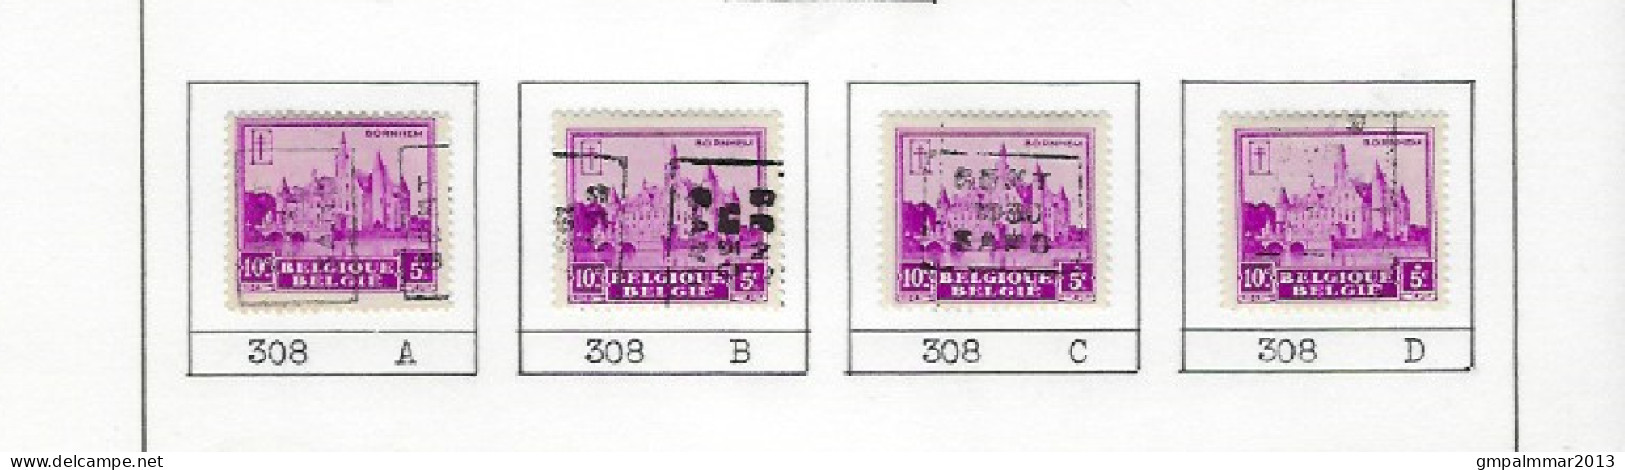 Zegel Nr. 308  voorafstempeling Nr. 5959 GENT 1930  GAND In De 4 Posities , A  B  C  en D ; Staat Zie Scan ! - Rollo De Sellos 1930-..